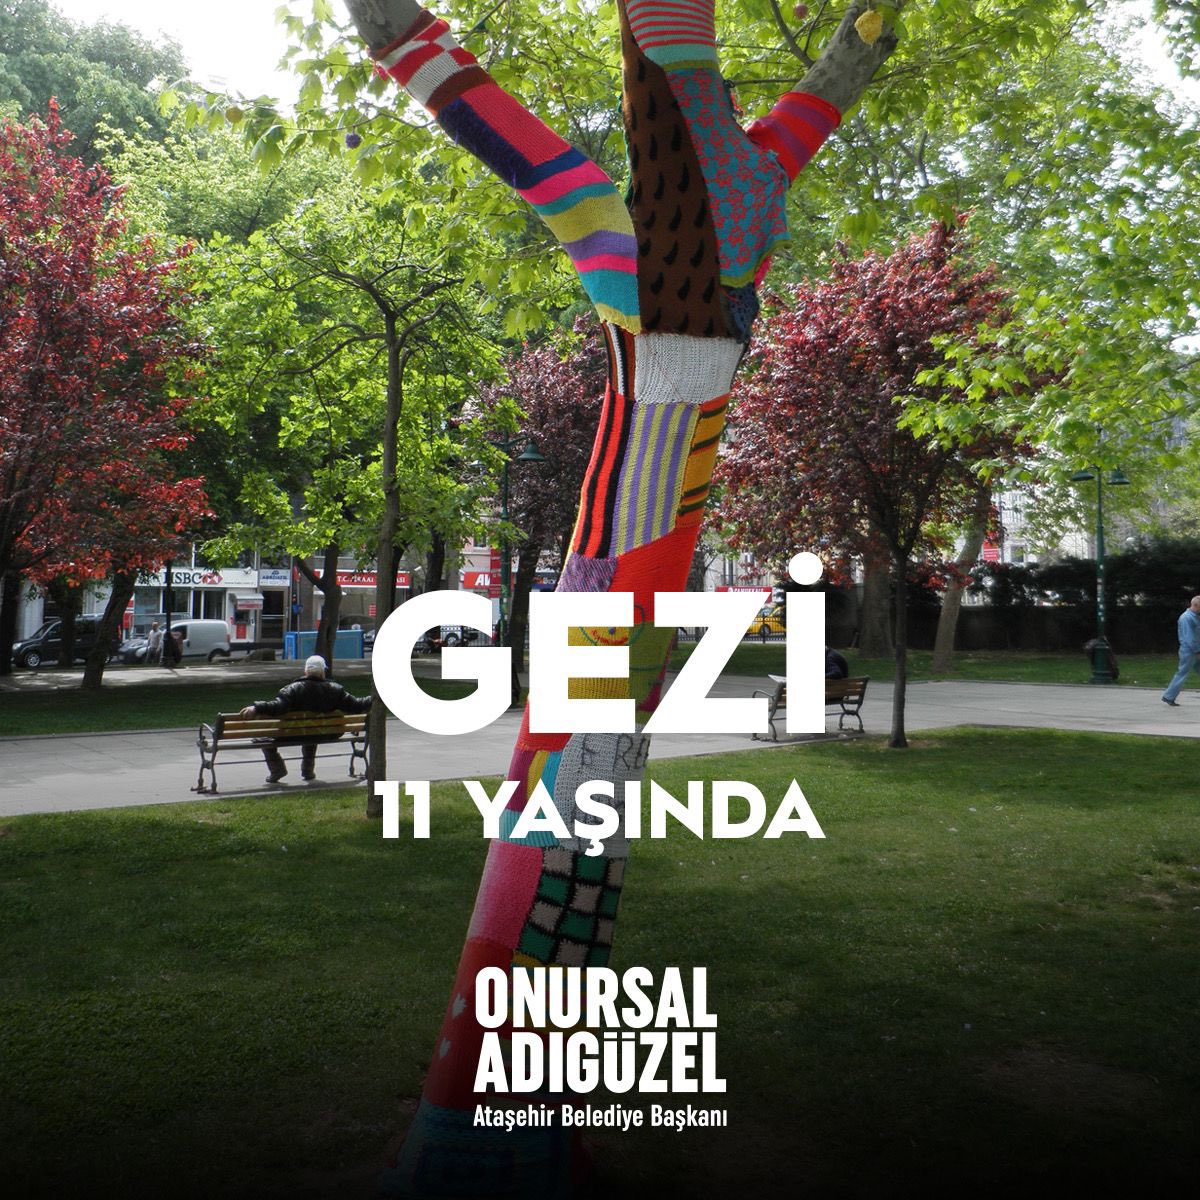 Gezi’nin mirası, daha adil ve özgür bir Türkiye için bizlere ilham veriyor. Haksız yere cezaevinde tutulan Can Atalay, Tayfun Kahraman, Çiğdem Mater, Mine Özerden ve Osman Kavala'yı selamlıyor, Gezi’de yitirdiğimiz kardeşlerimizi saygıyla anıyorum. #Gezi11Yaşında